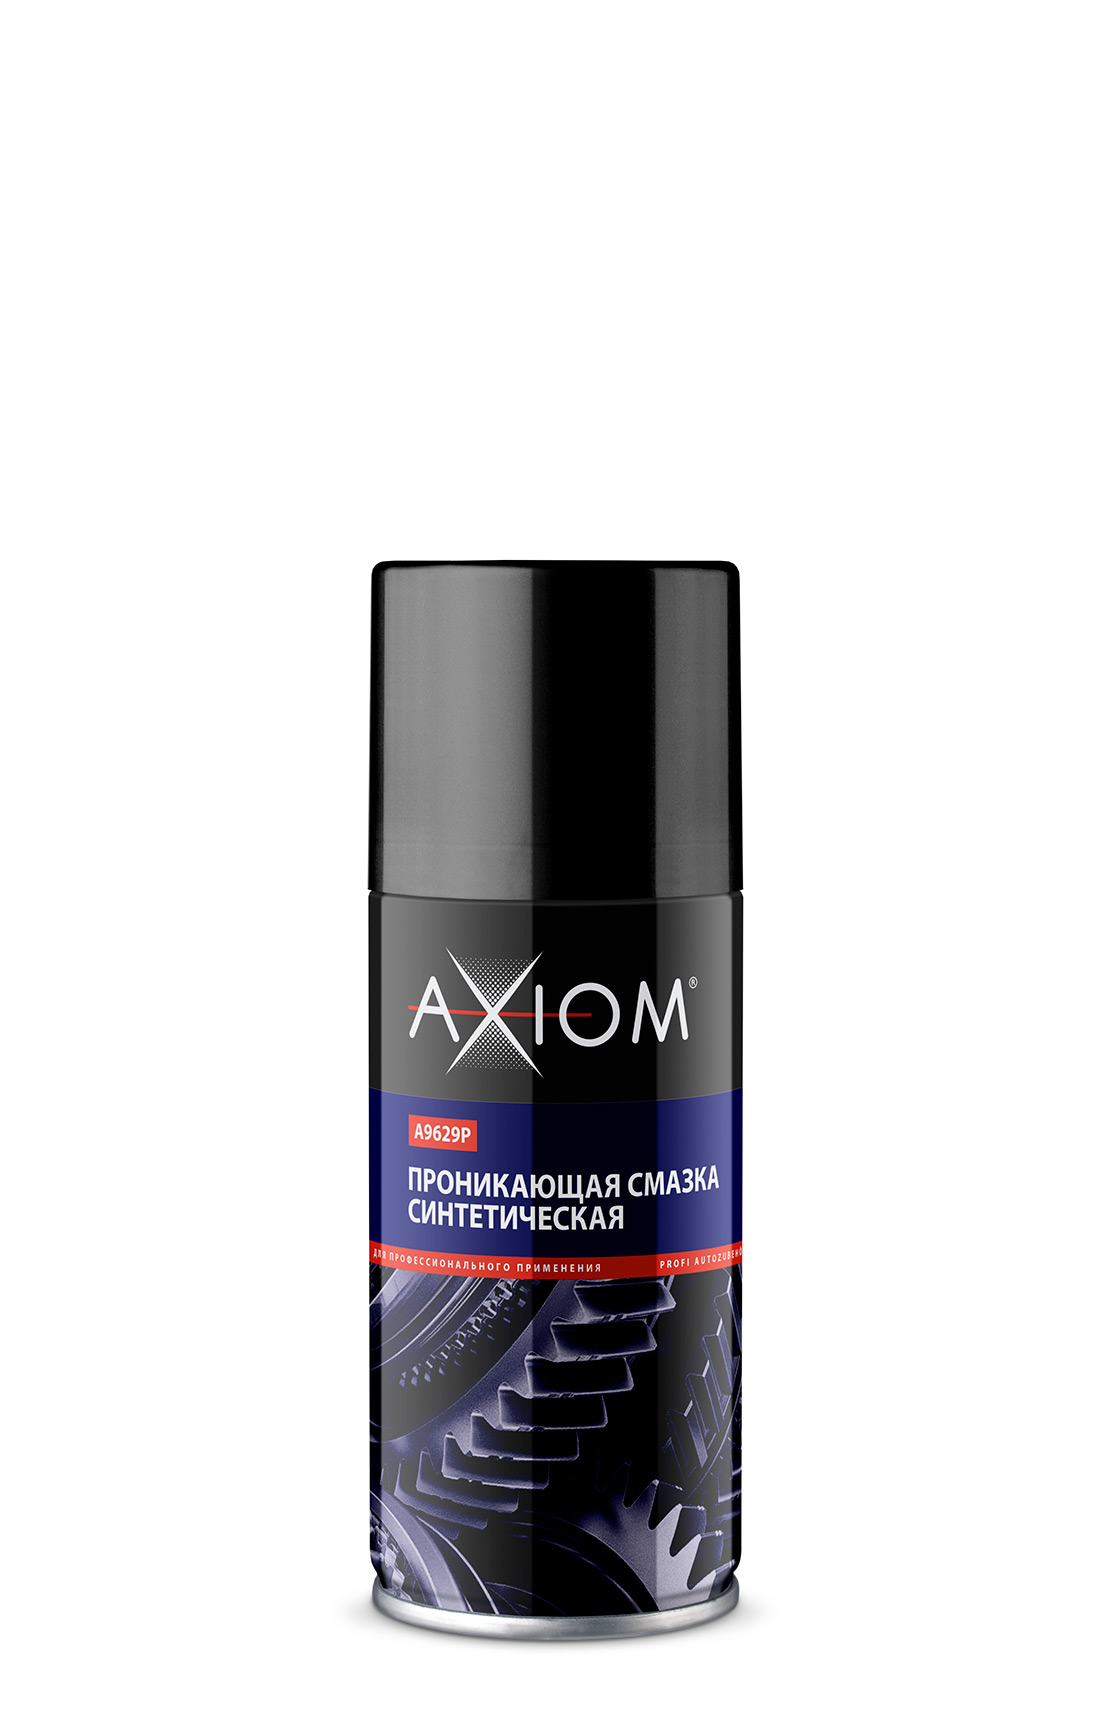 Axiom  A9629P Смазка проникающая синтетическая 210 мл | Helas.ru